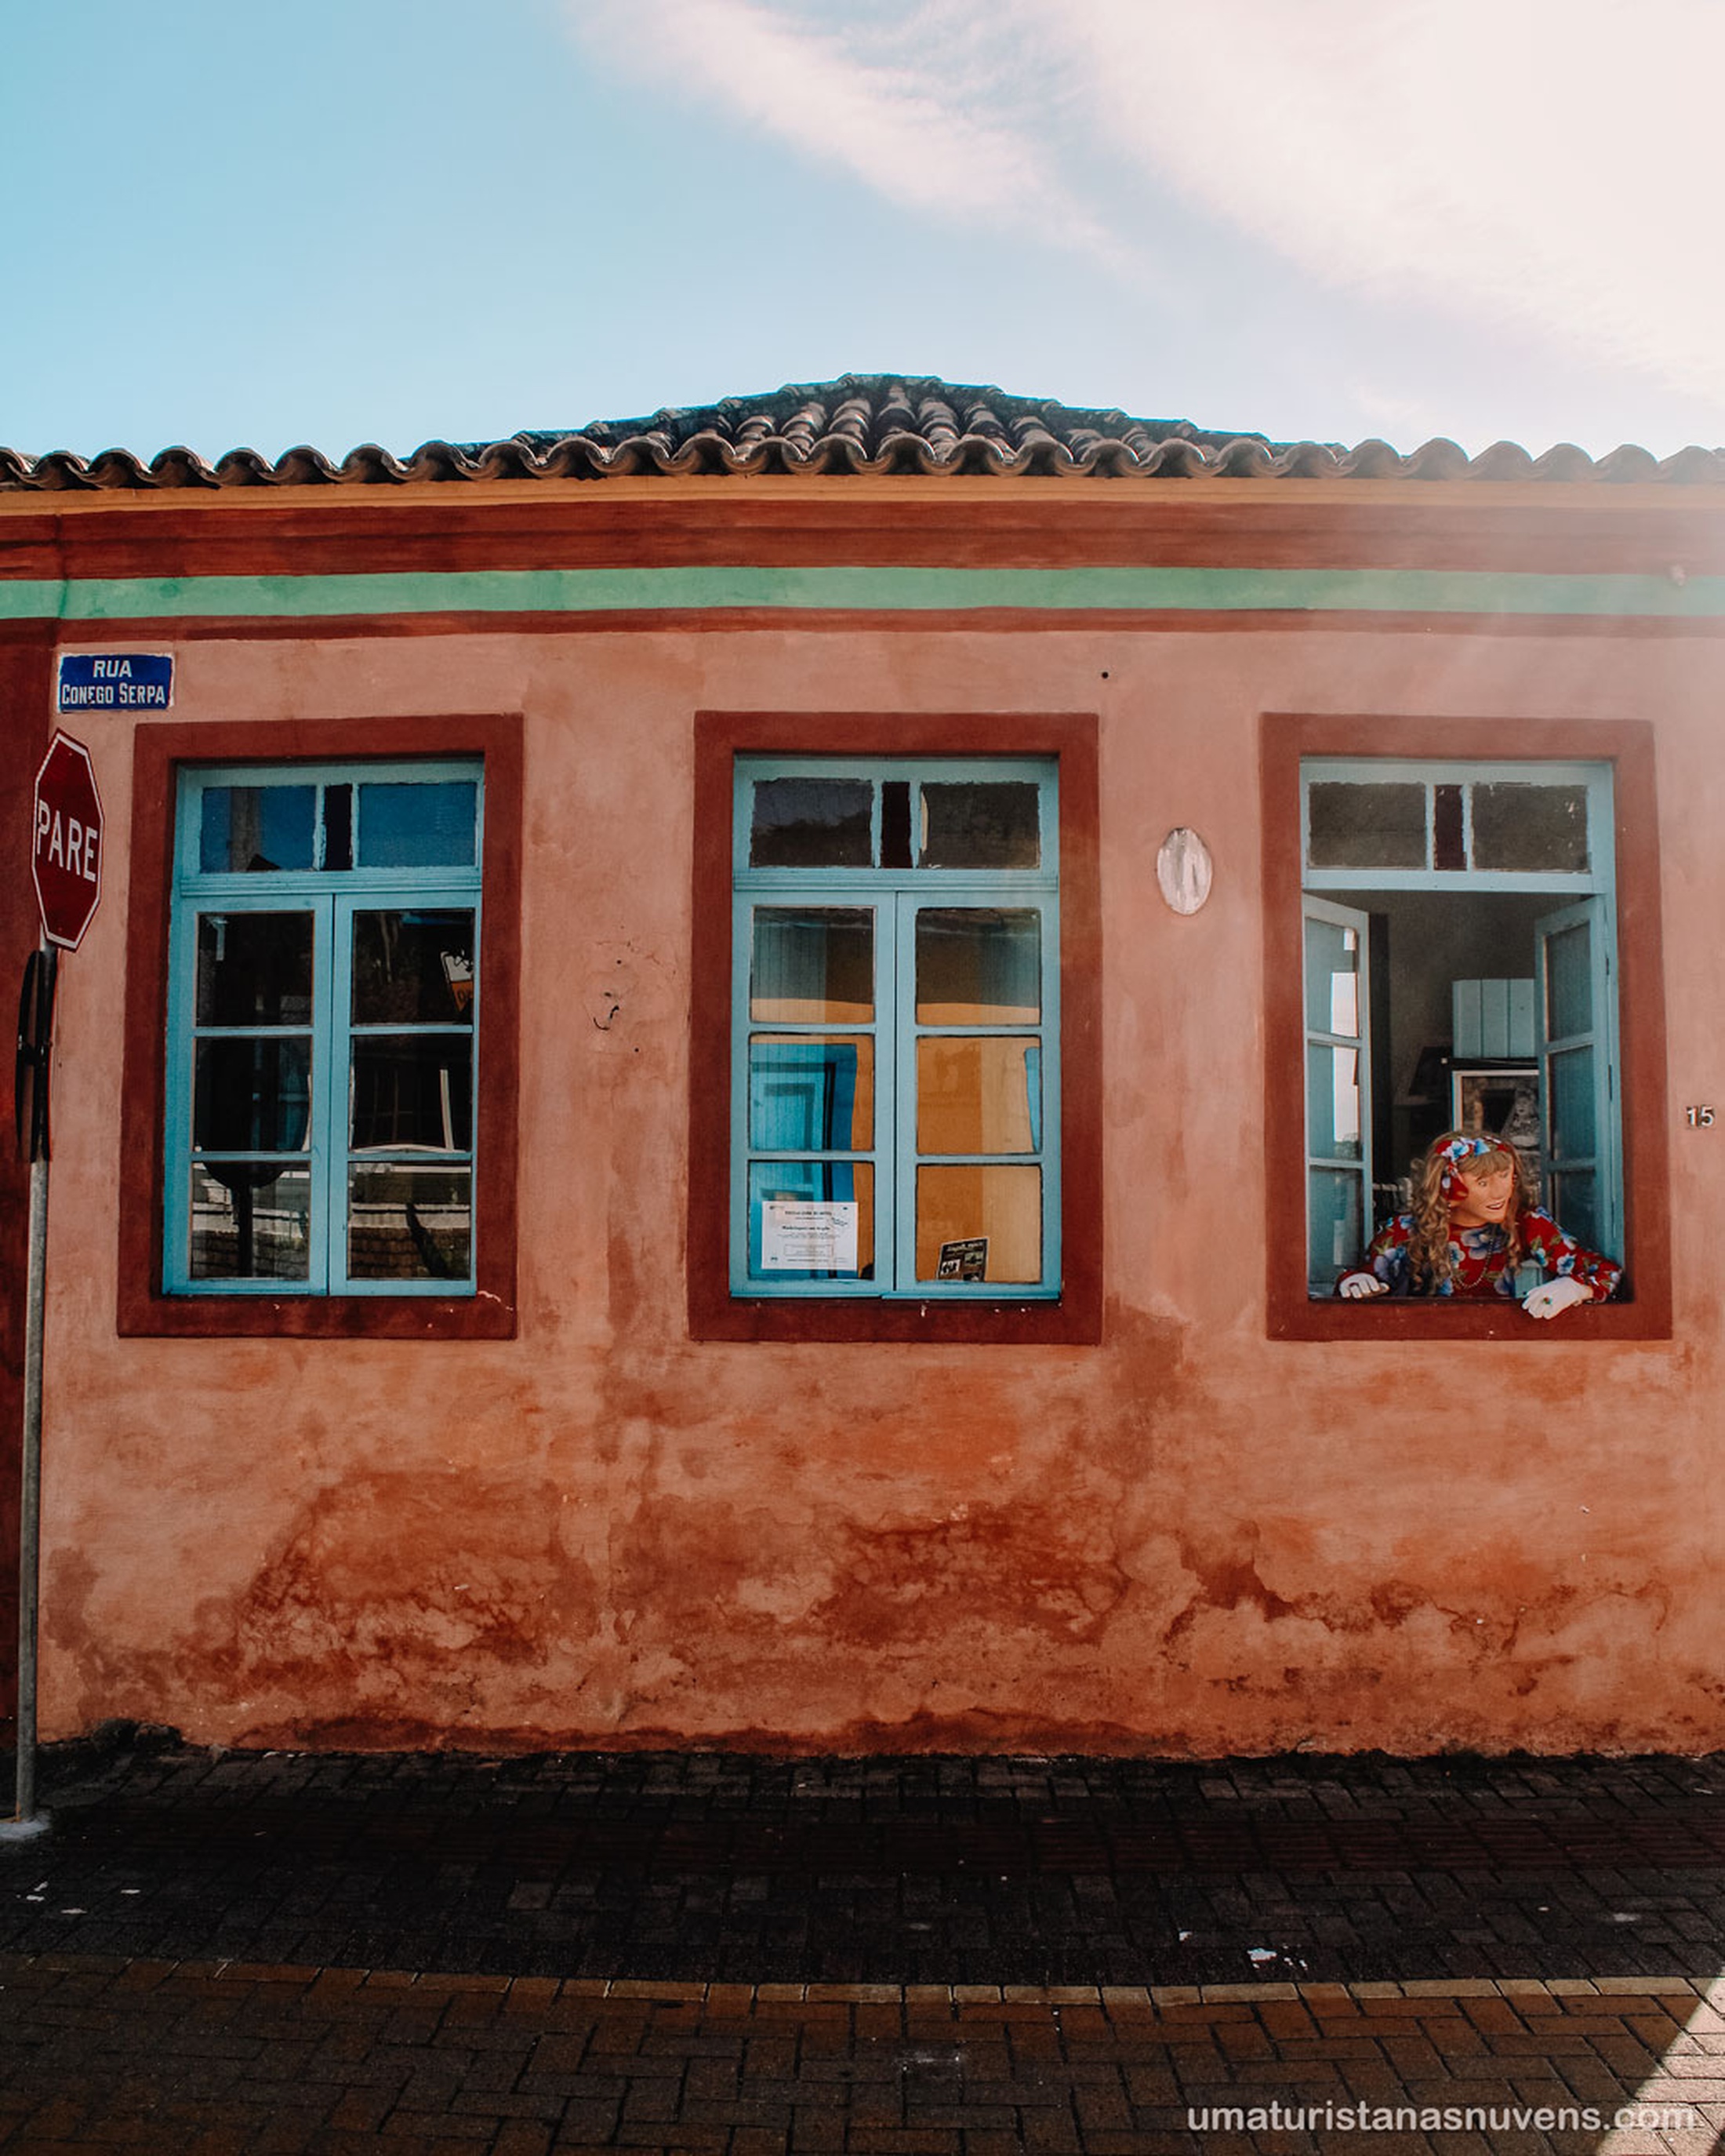 A casa da fotografia foi cedida pela prefeitura municipal de Florianópolis para ser a sede da Casa dos Açores. Está localizada na freguesia de Santo Antônio de Lisboa. Será restaurada para se tornar sede da Casa dos Açores.